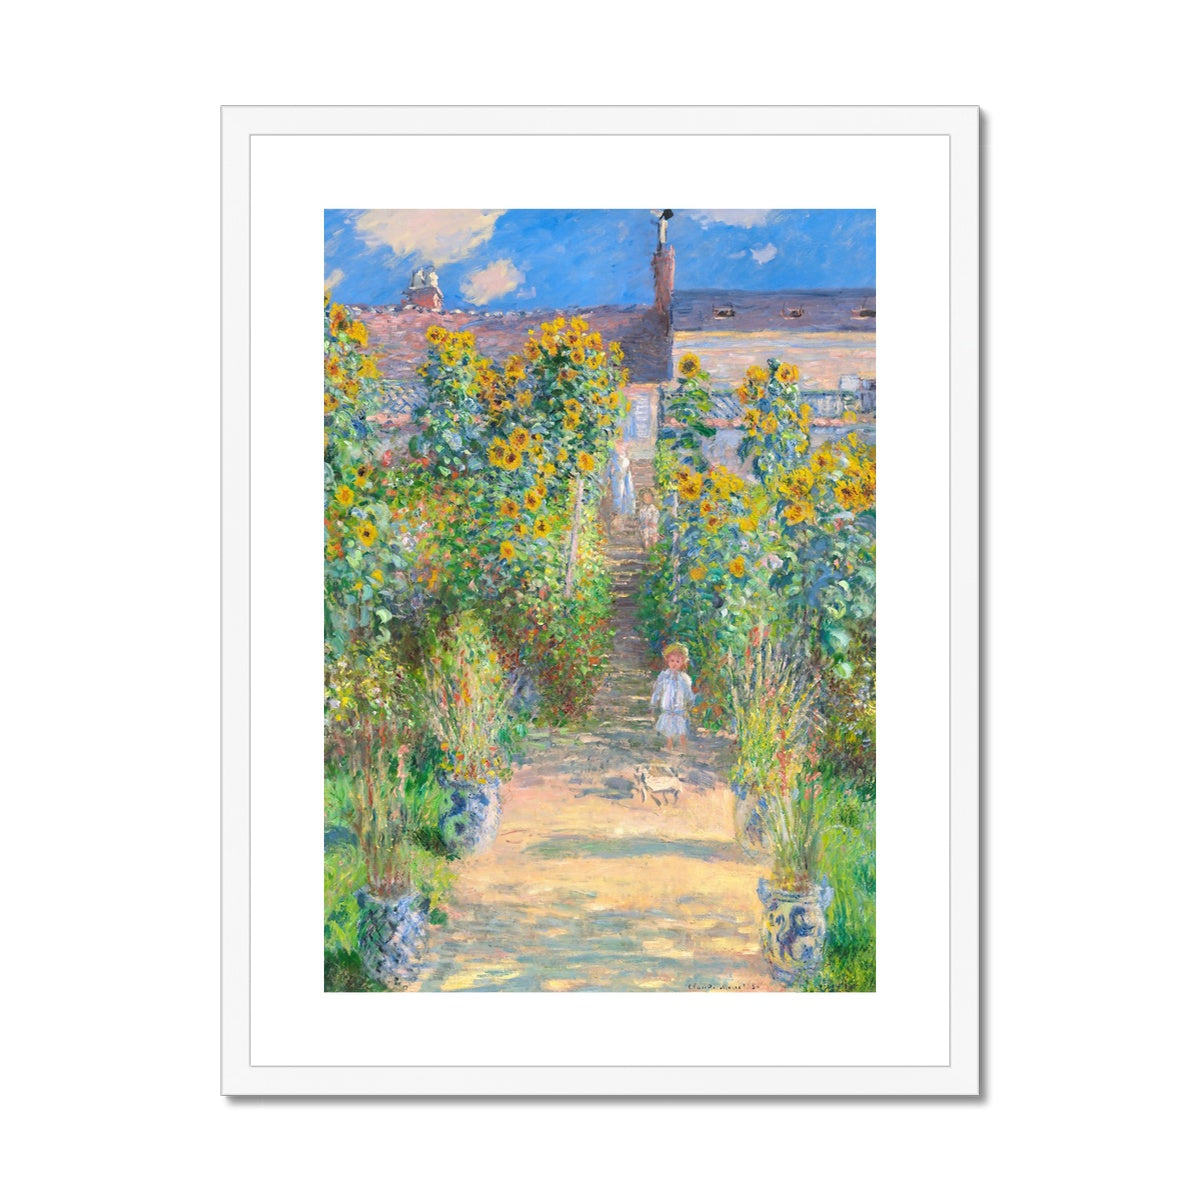 Claude Monet Framed Open Edition Art Print. 'The Artist's Garden at Vétheuil'. Art Gallery Historic Art